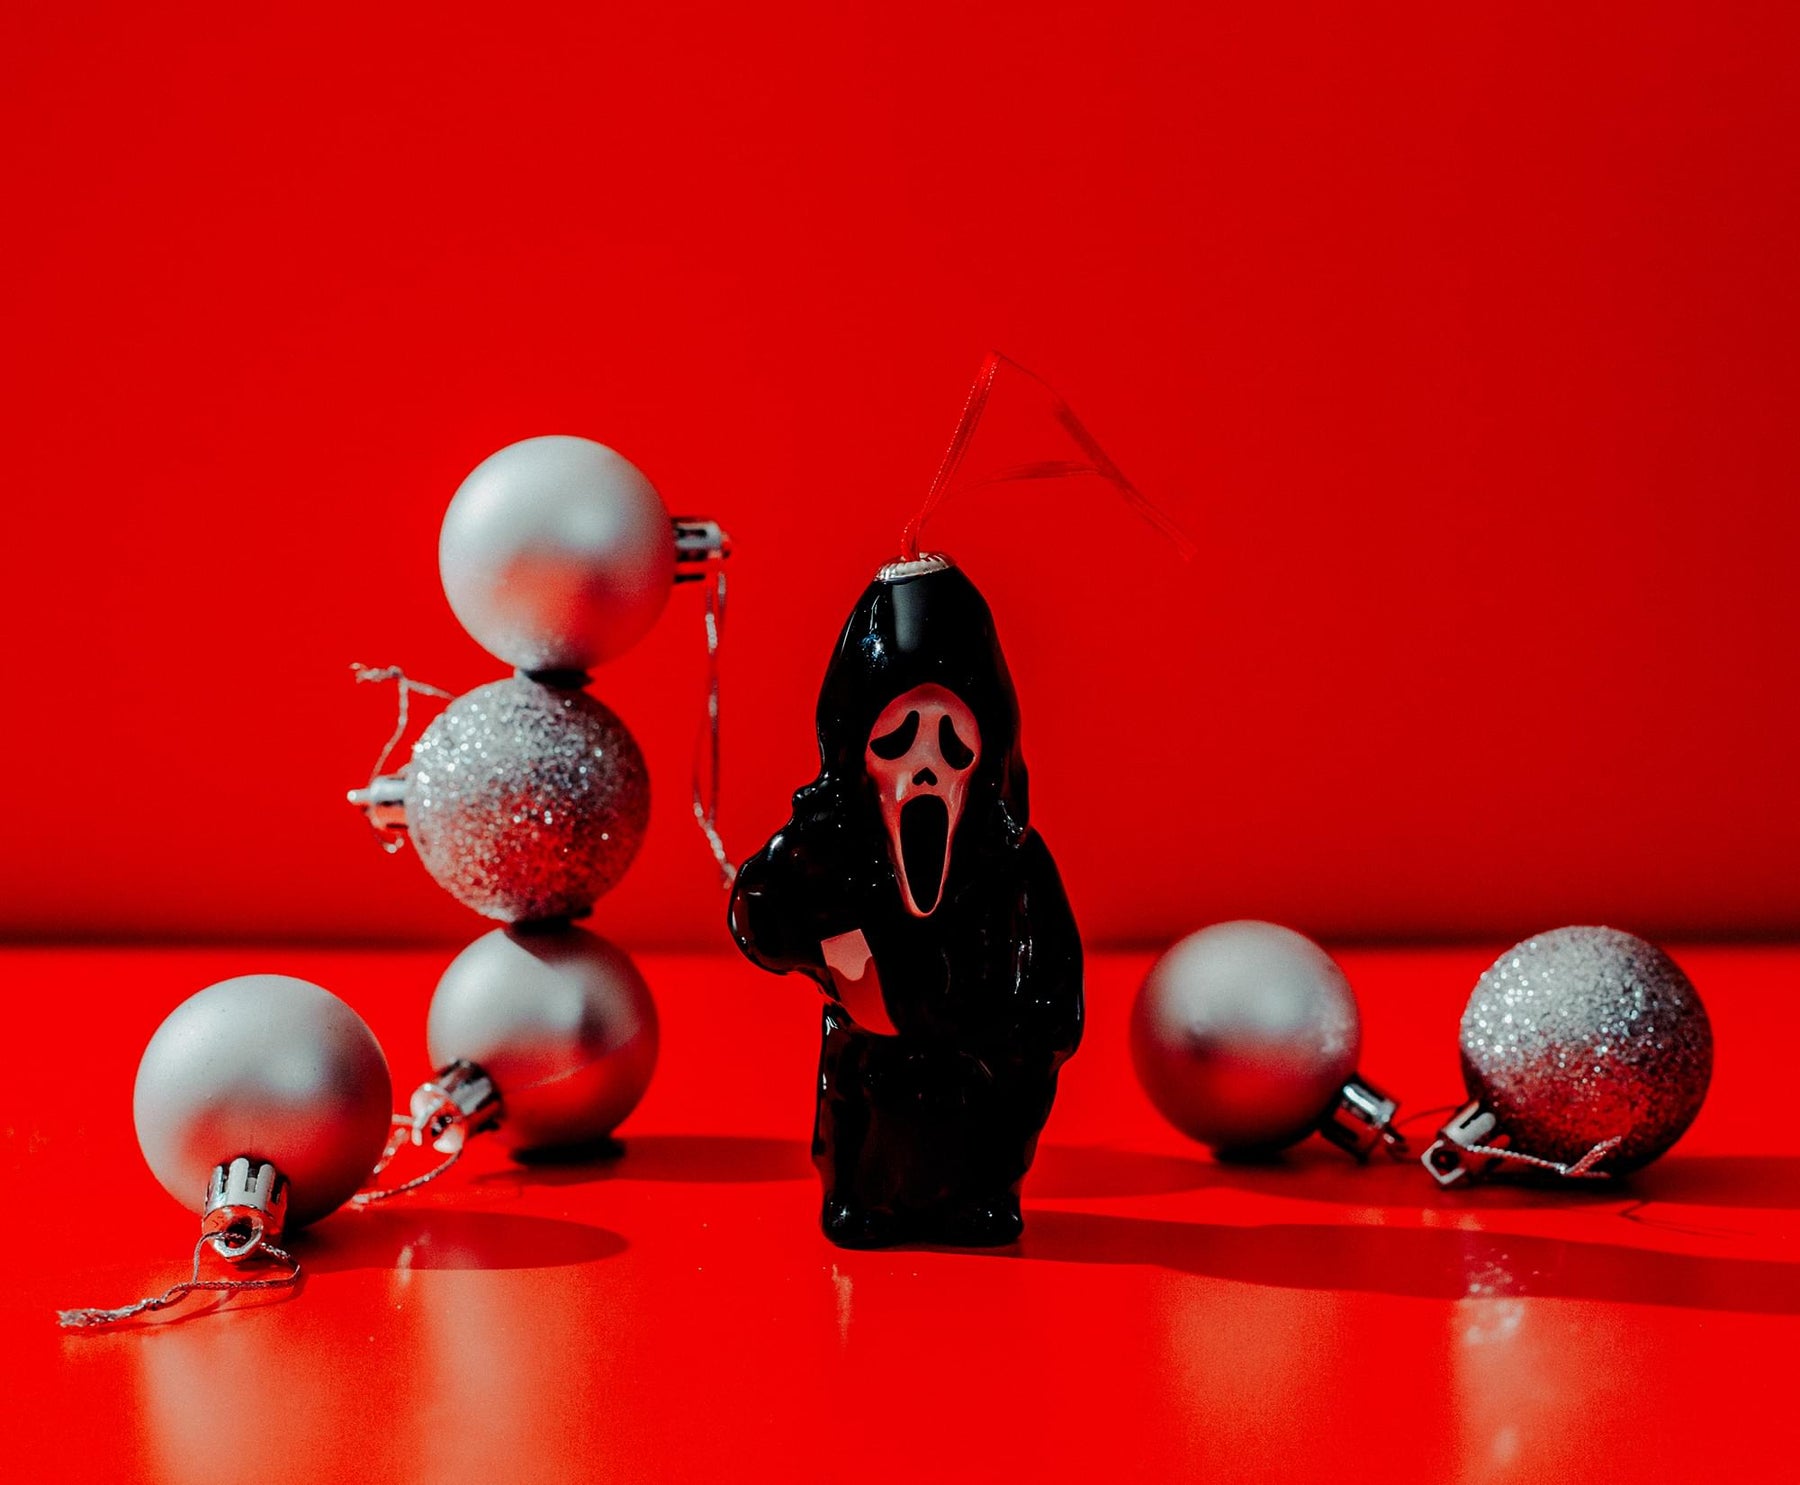 Scream Ghostface 4-Inch Shatterproof Decoupage Ornament